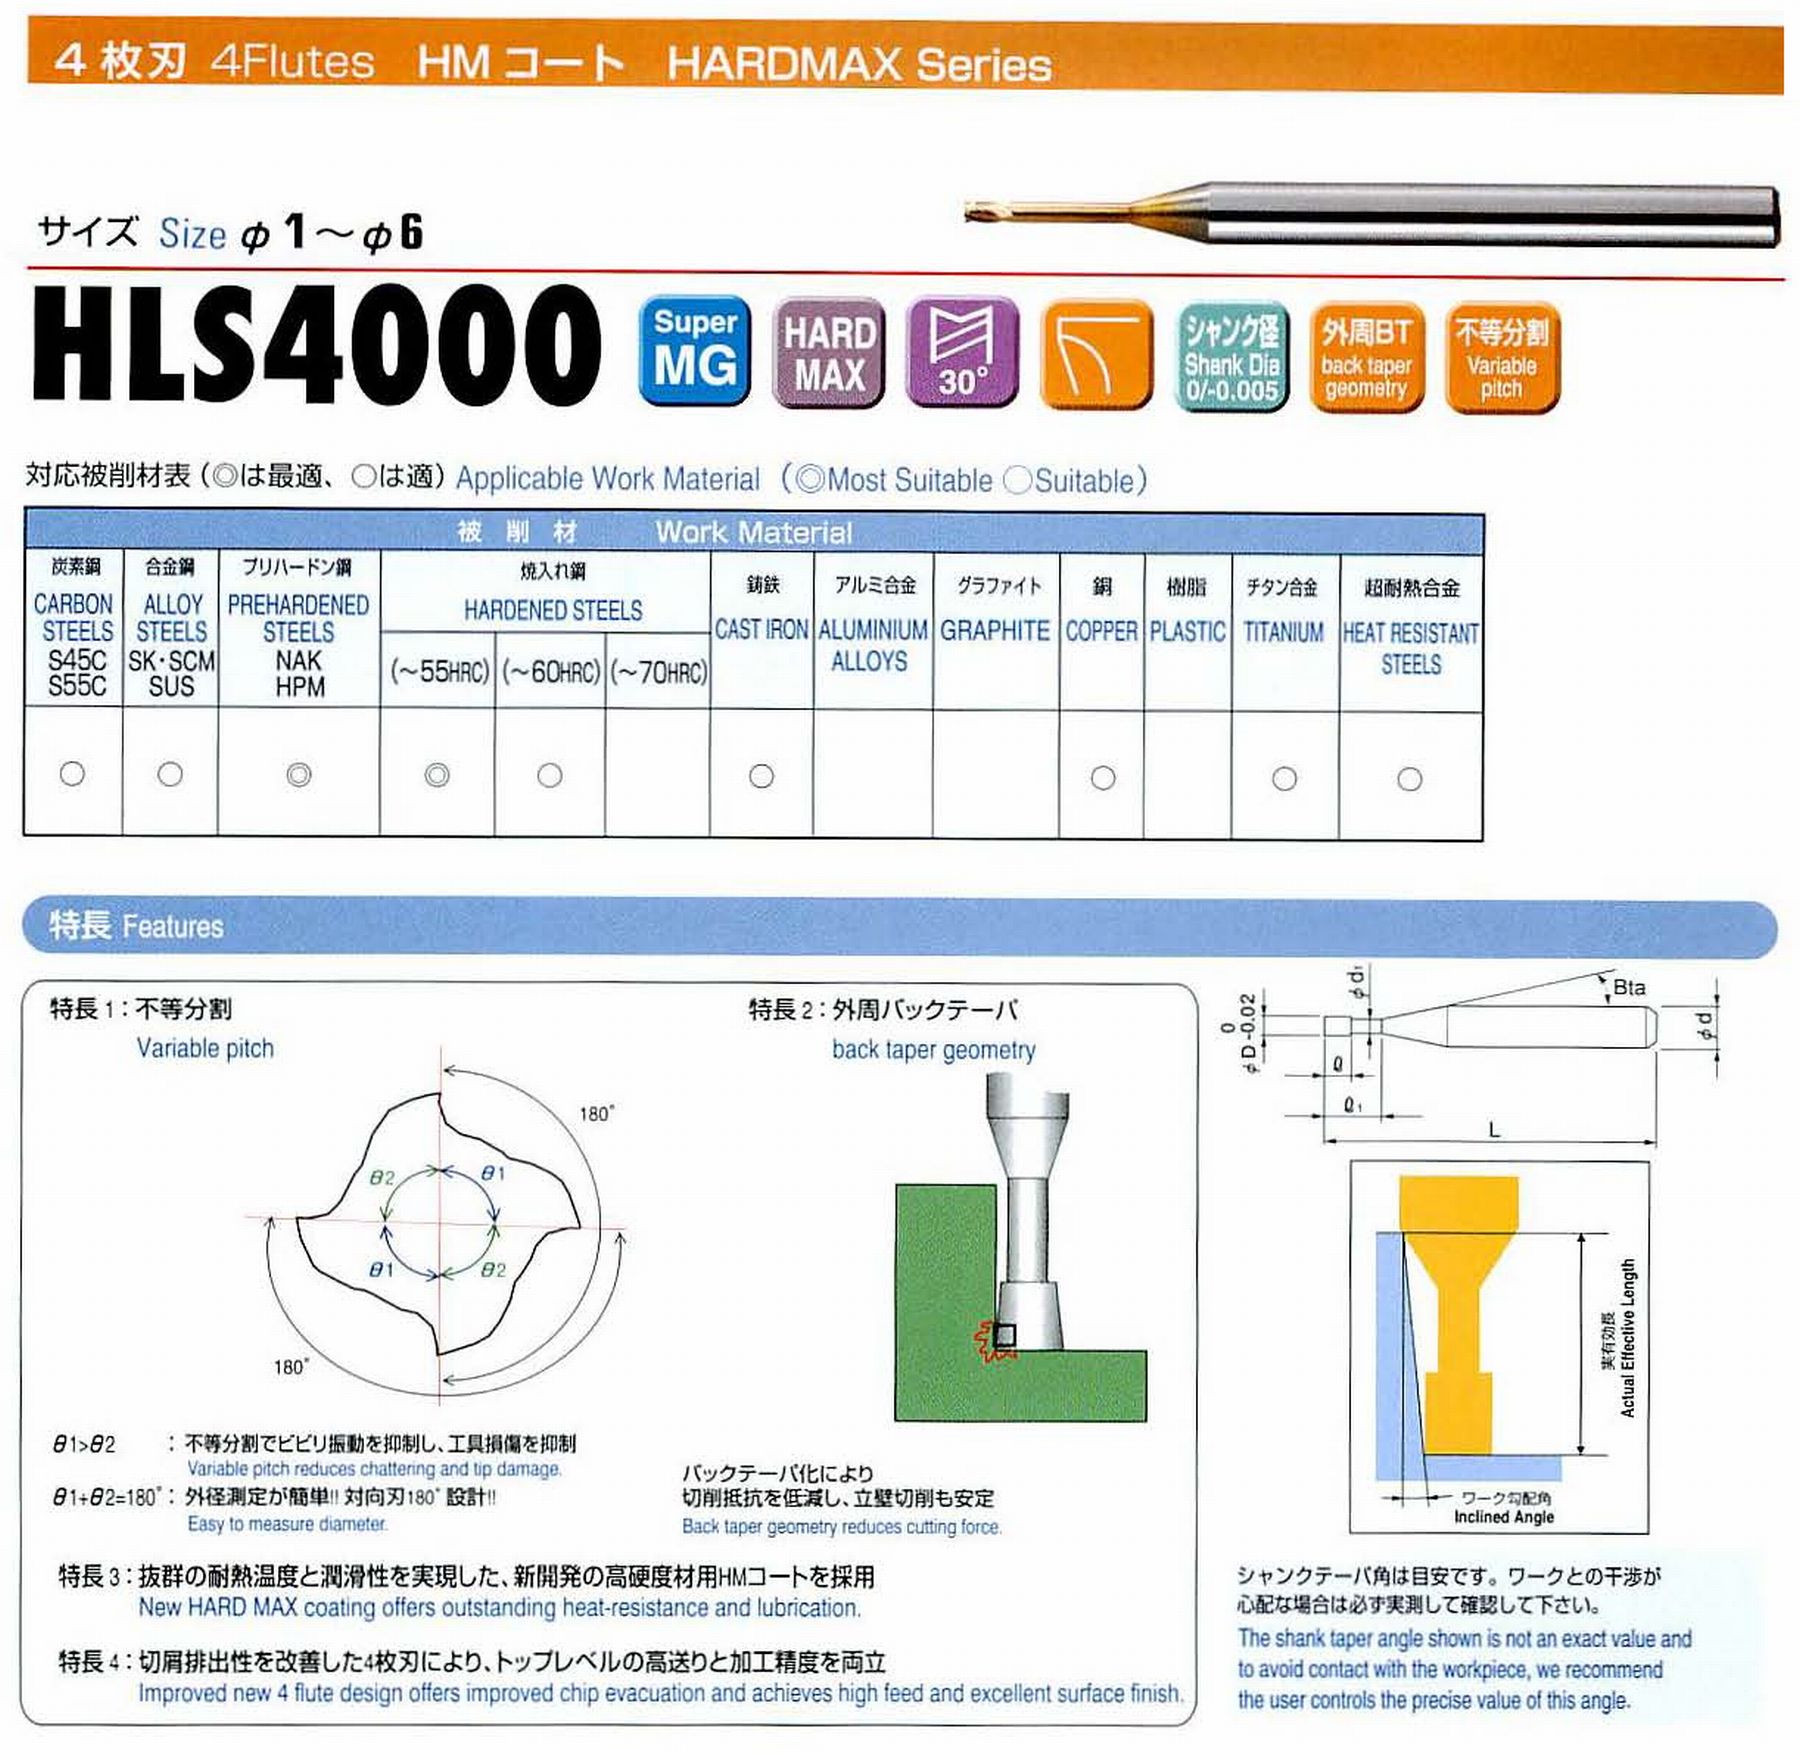 ユニオンツール 4枚刃 HLS4020-180 外径2 有効長18 刃長2 首径1.91 シャンクテーパ角16° 全長60 シャンク径4